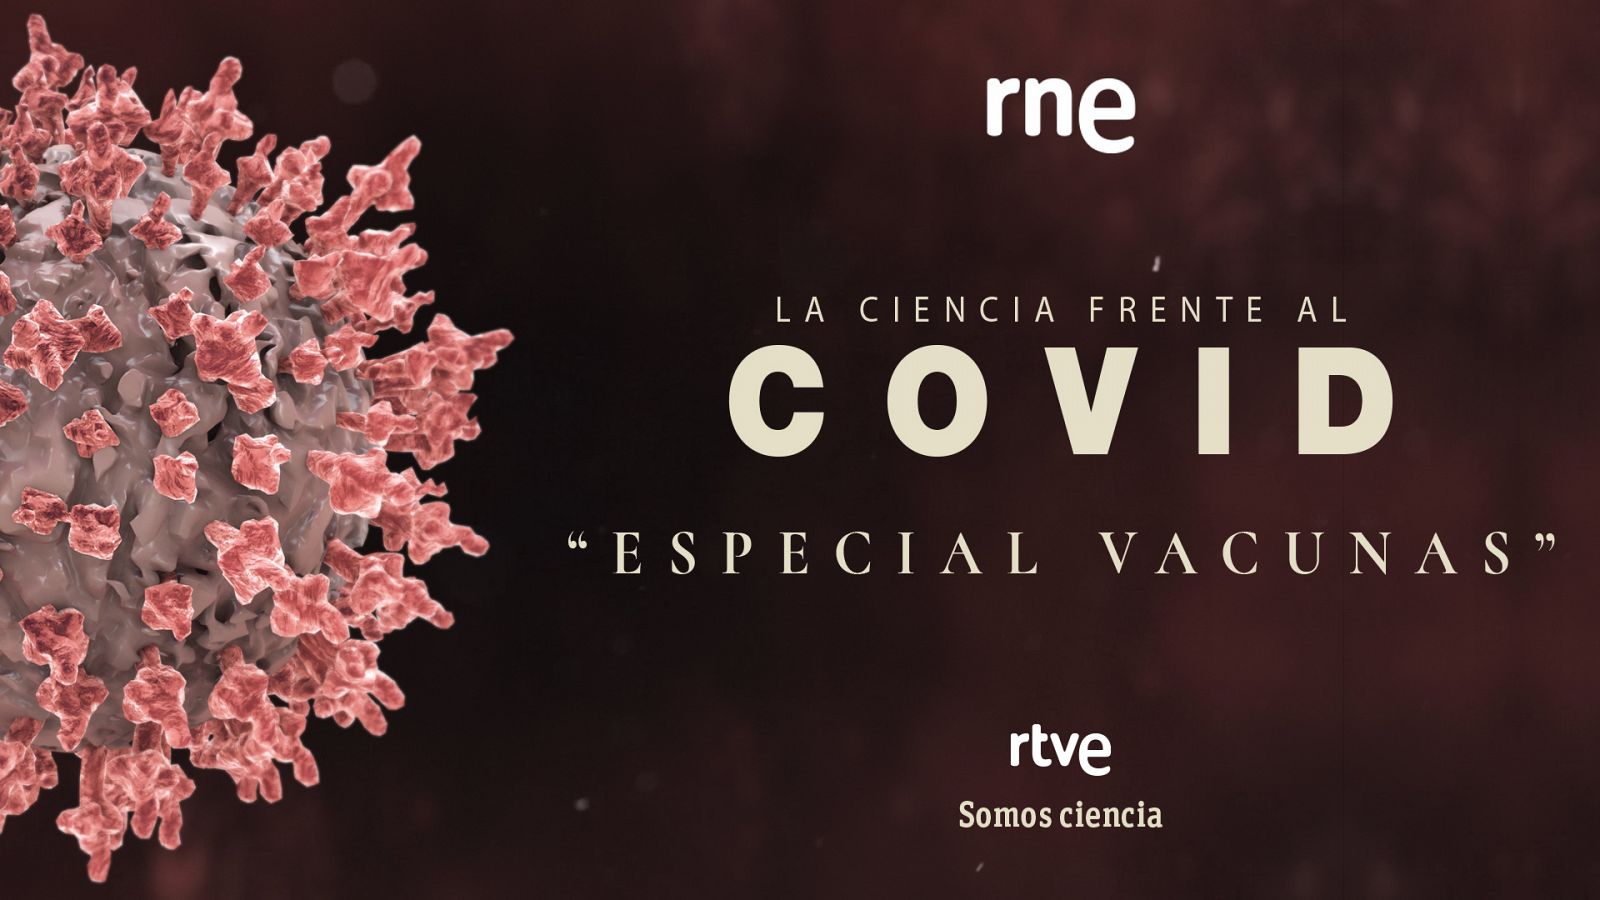 Las cuñas de RNE - Especial vacunas en 'La ciencia frente al COVID' - Ver ahora